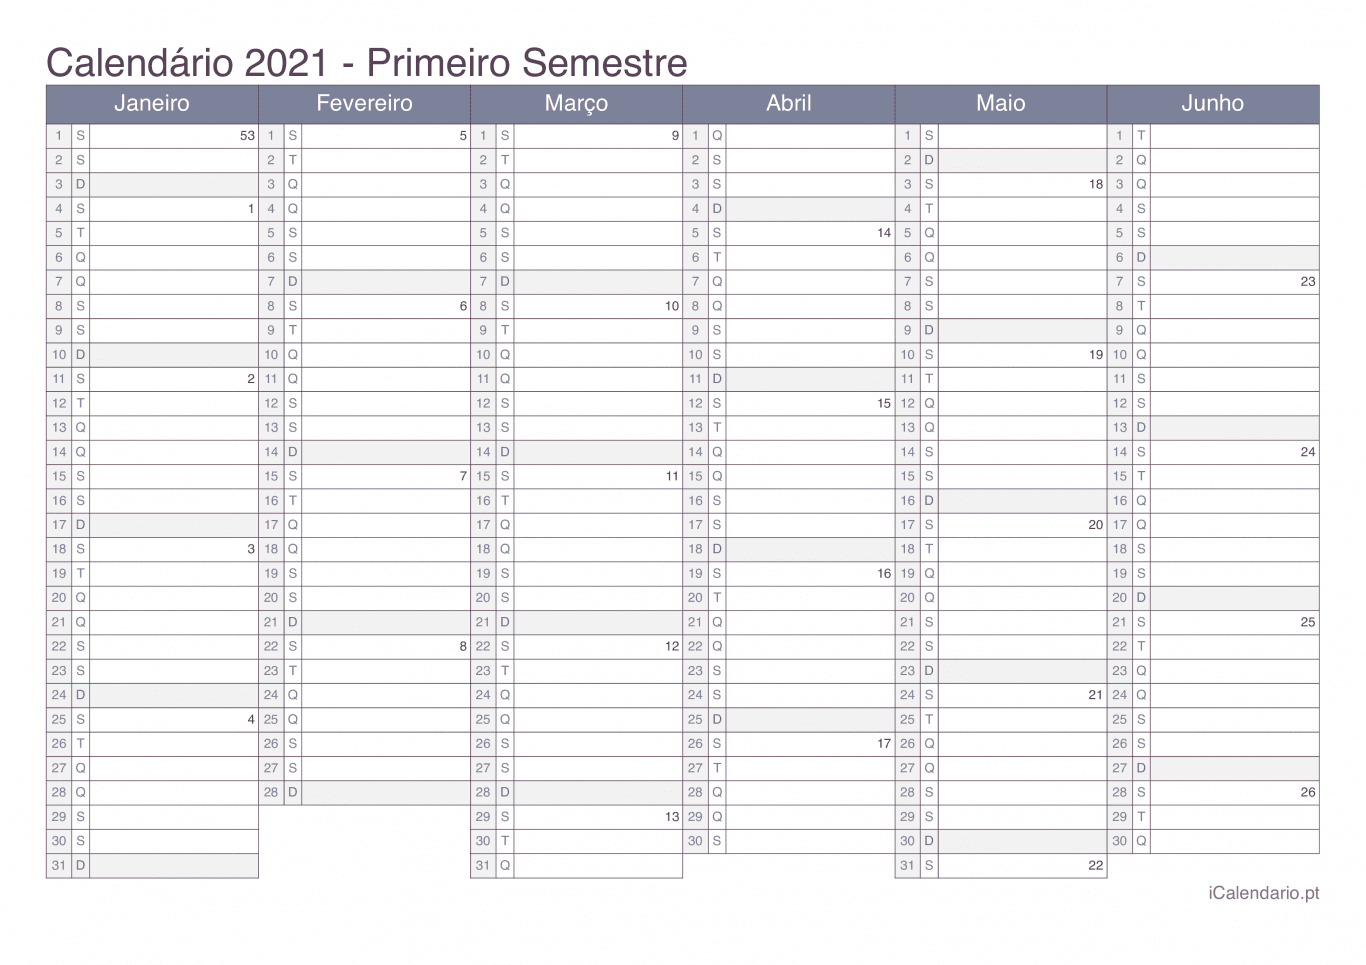 Calendário por semestre com números da semana 2021 - Office